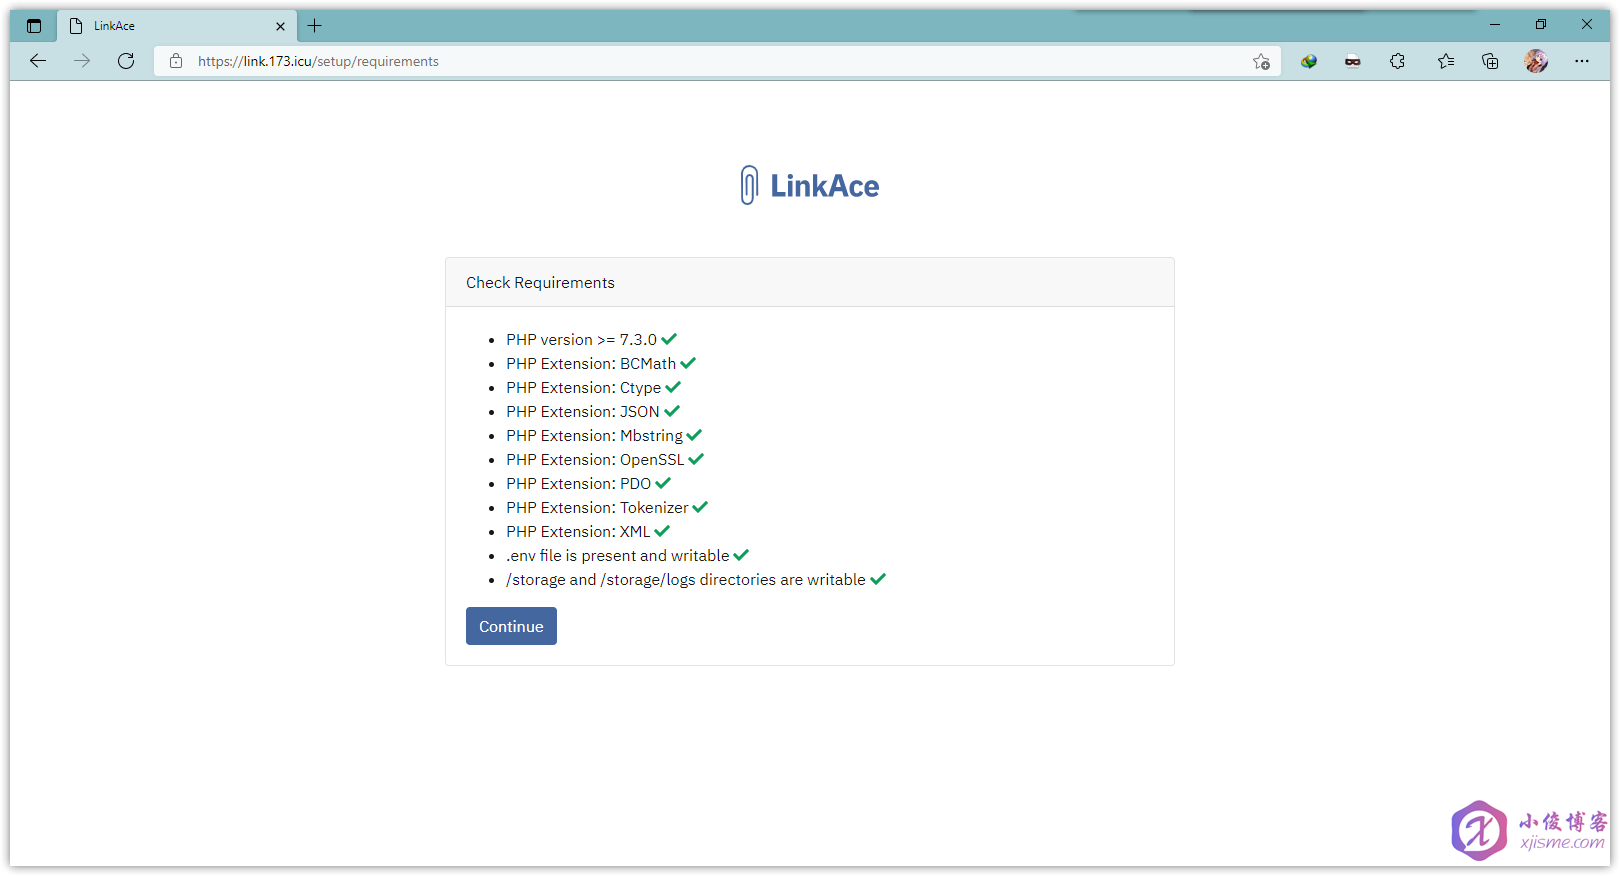 腾讯云轻量应用服务器搭建 LinkAce 书签管理器 - 检查环境